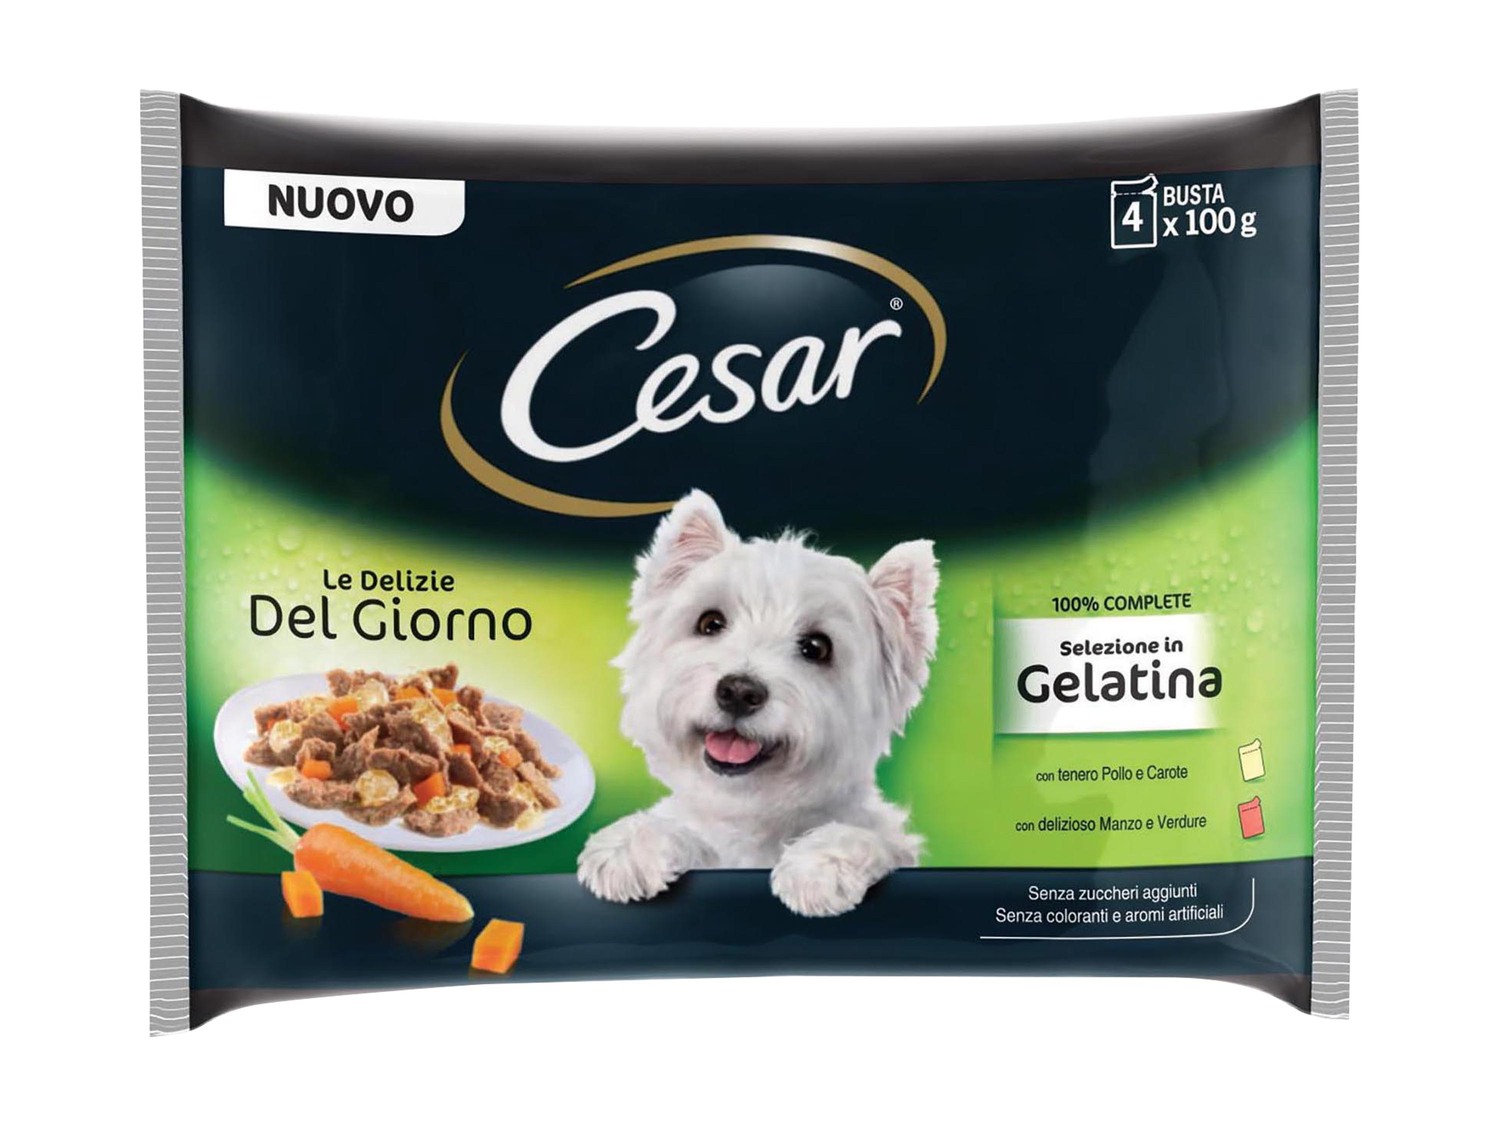 Корм для собак бетховен. Cesar корм для собак. Паучи Cesar для собак. Желе для собак Cesar.